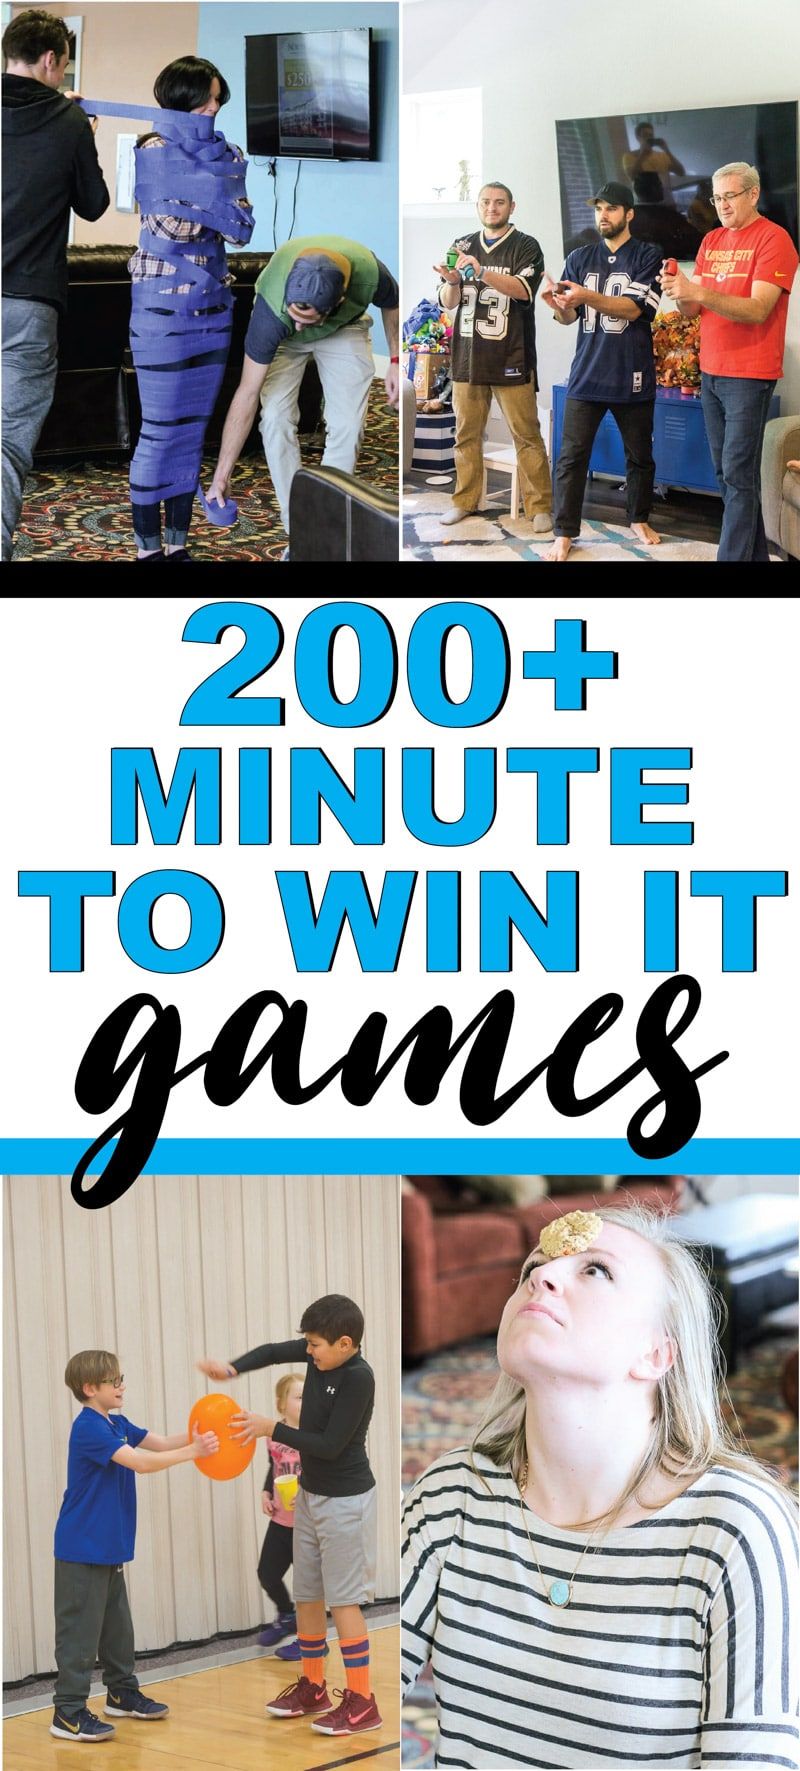 어린이, 청소년 또는 성인용 게임에서 이길 수있는 최고의 순간입니다! 가족 모임, 학교, 학교 파티 등에 완벽한 200 개 이상의 재미있는 게임! 쉬운 게임, 재미있는 팀 게임 등!